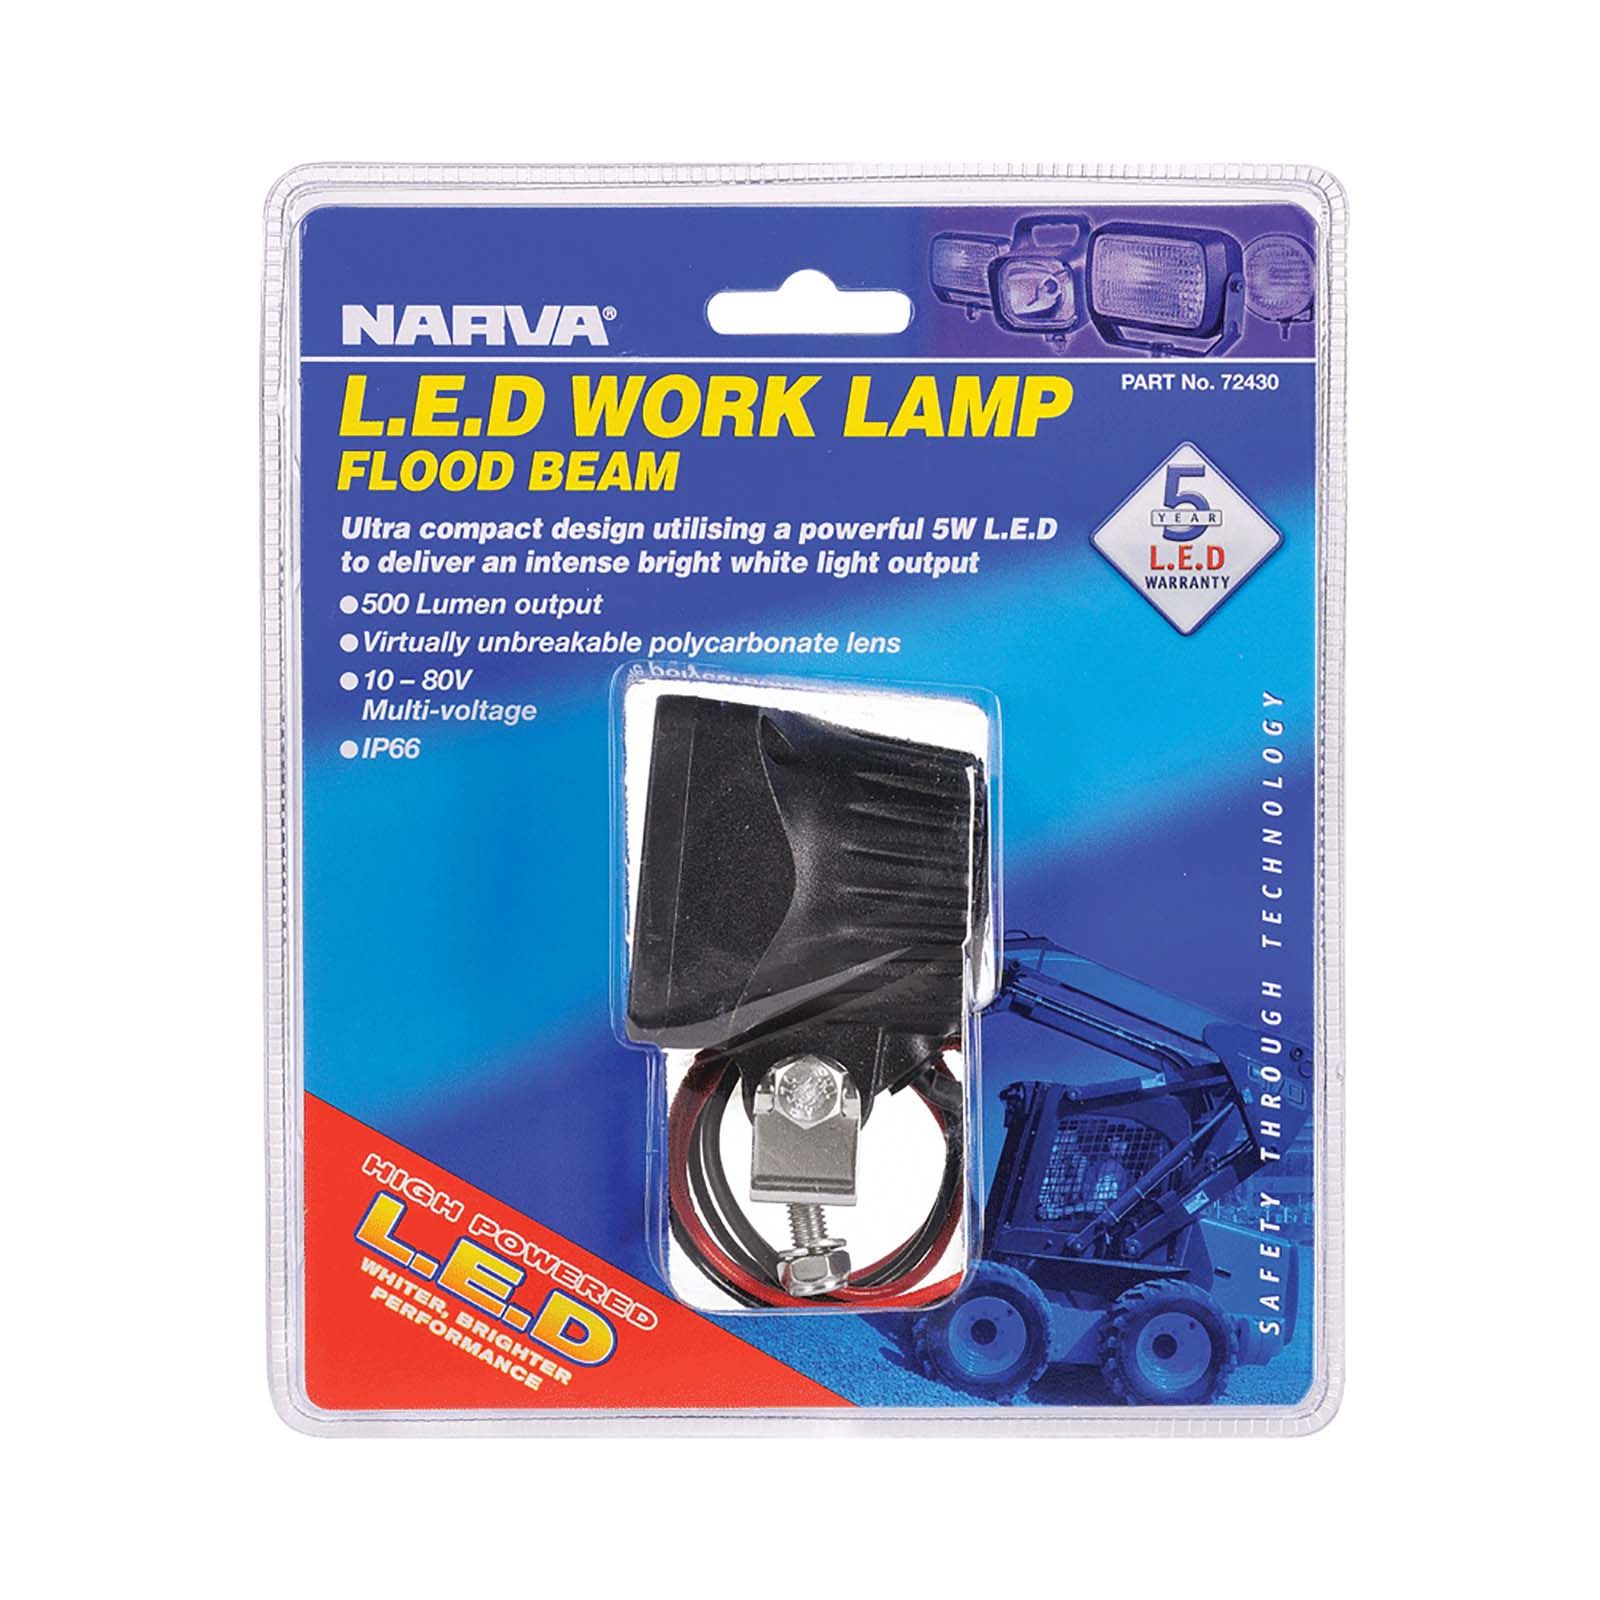 72430 Narva 10-80V LED Work Lamp Flood Beam 500 Lumens